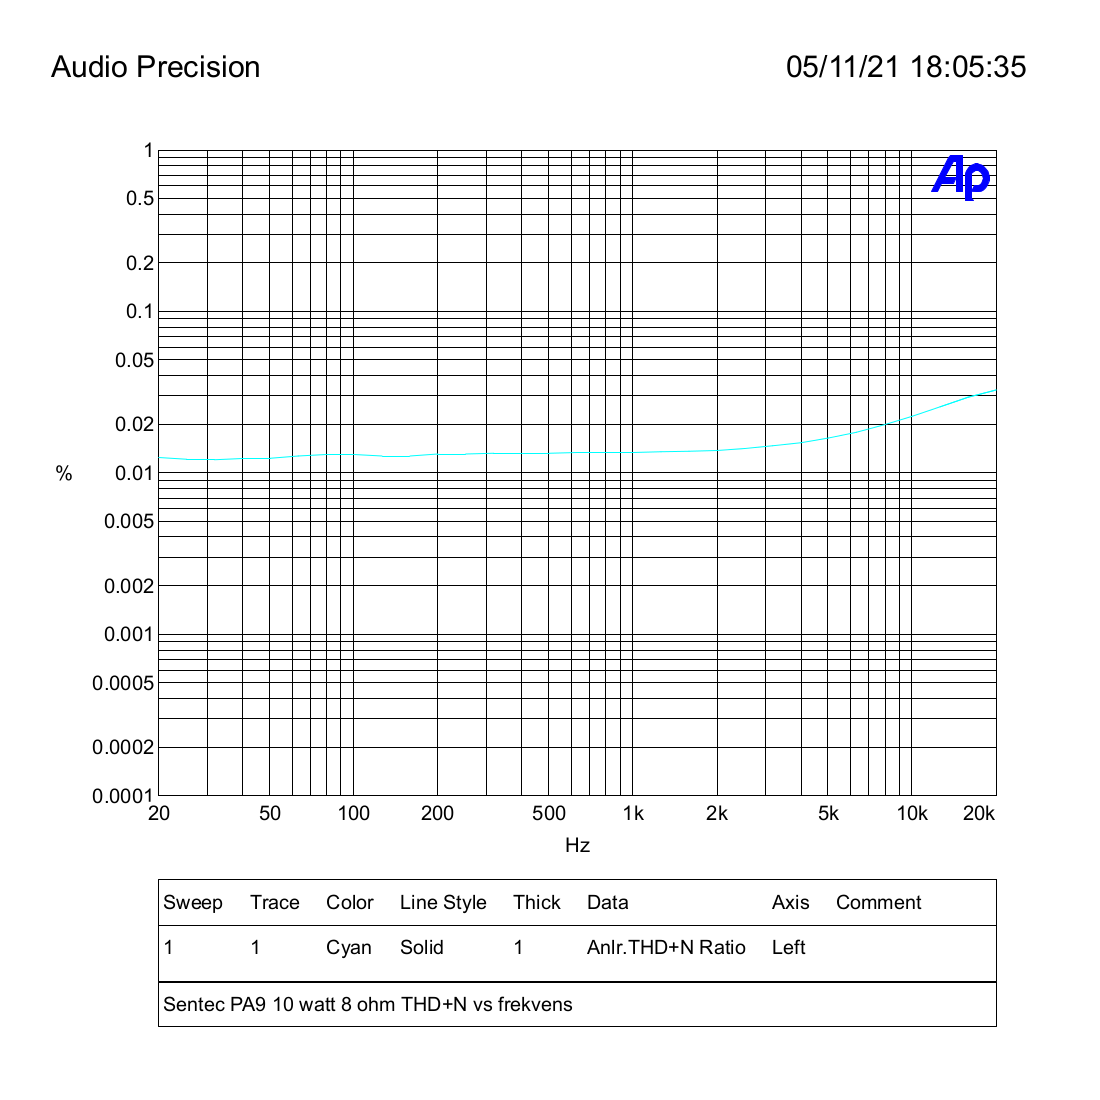 Sentec PA9 10 watt 8 ohm THD+N vs frekvens.png